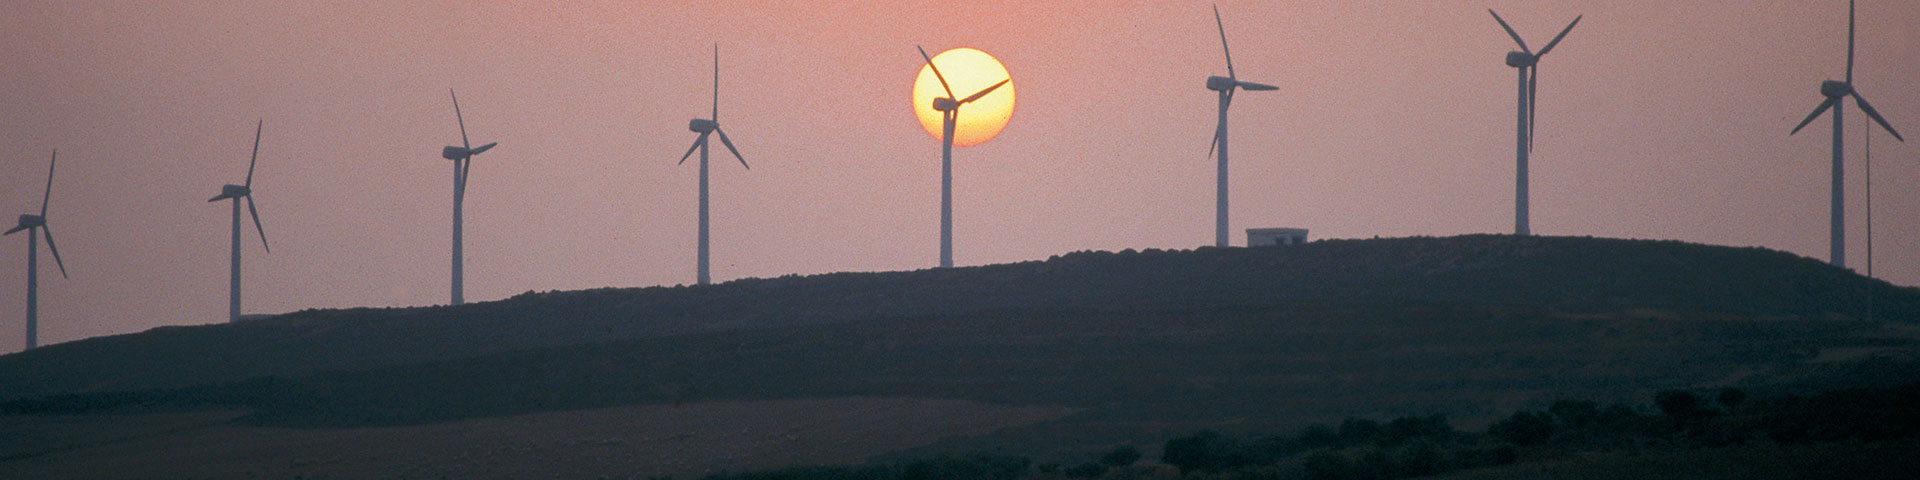 Windkraftanlagen auf einem Hügel während eines Sonnenuntergangs.